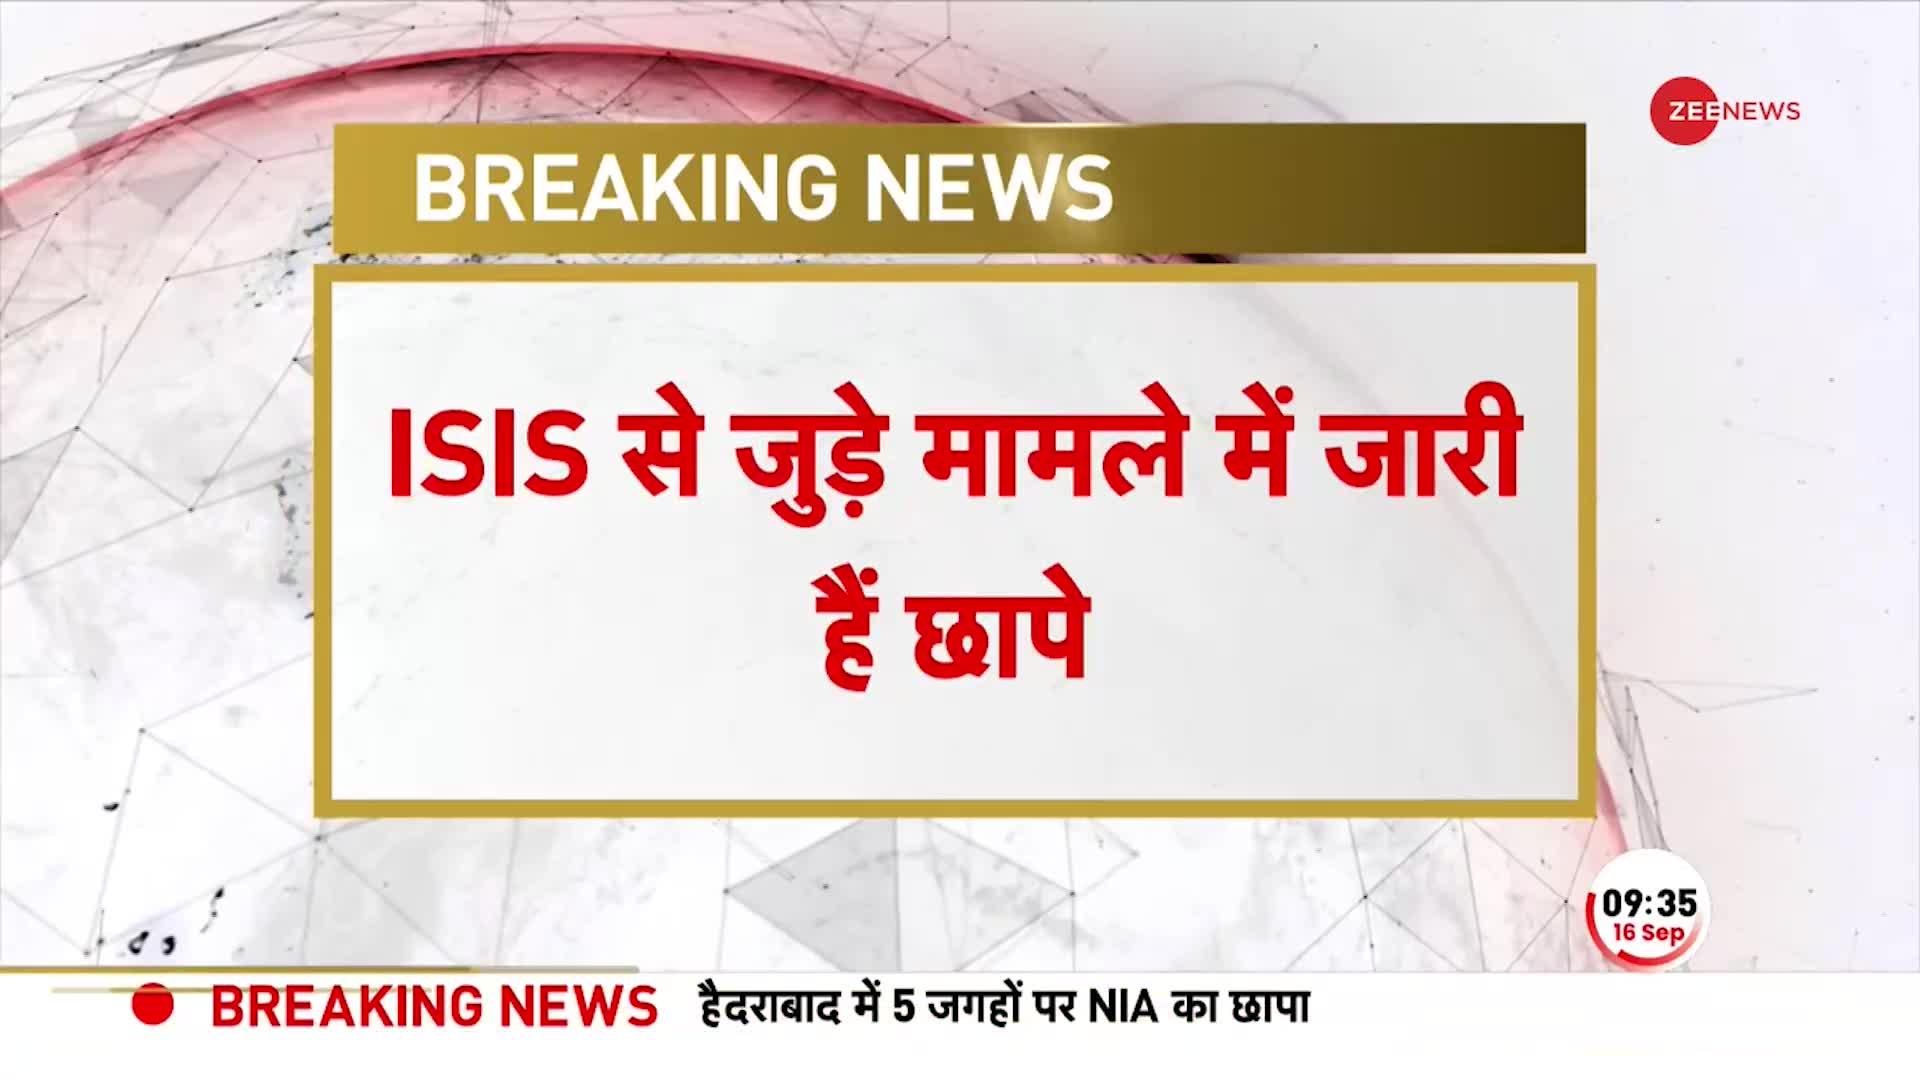 Telangana NIA Raid At ISIS Hideout: ISIS से जुड़े मामले में तेलंगाना में का NIA का छापा